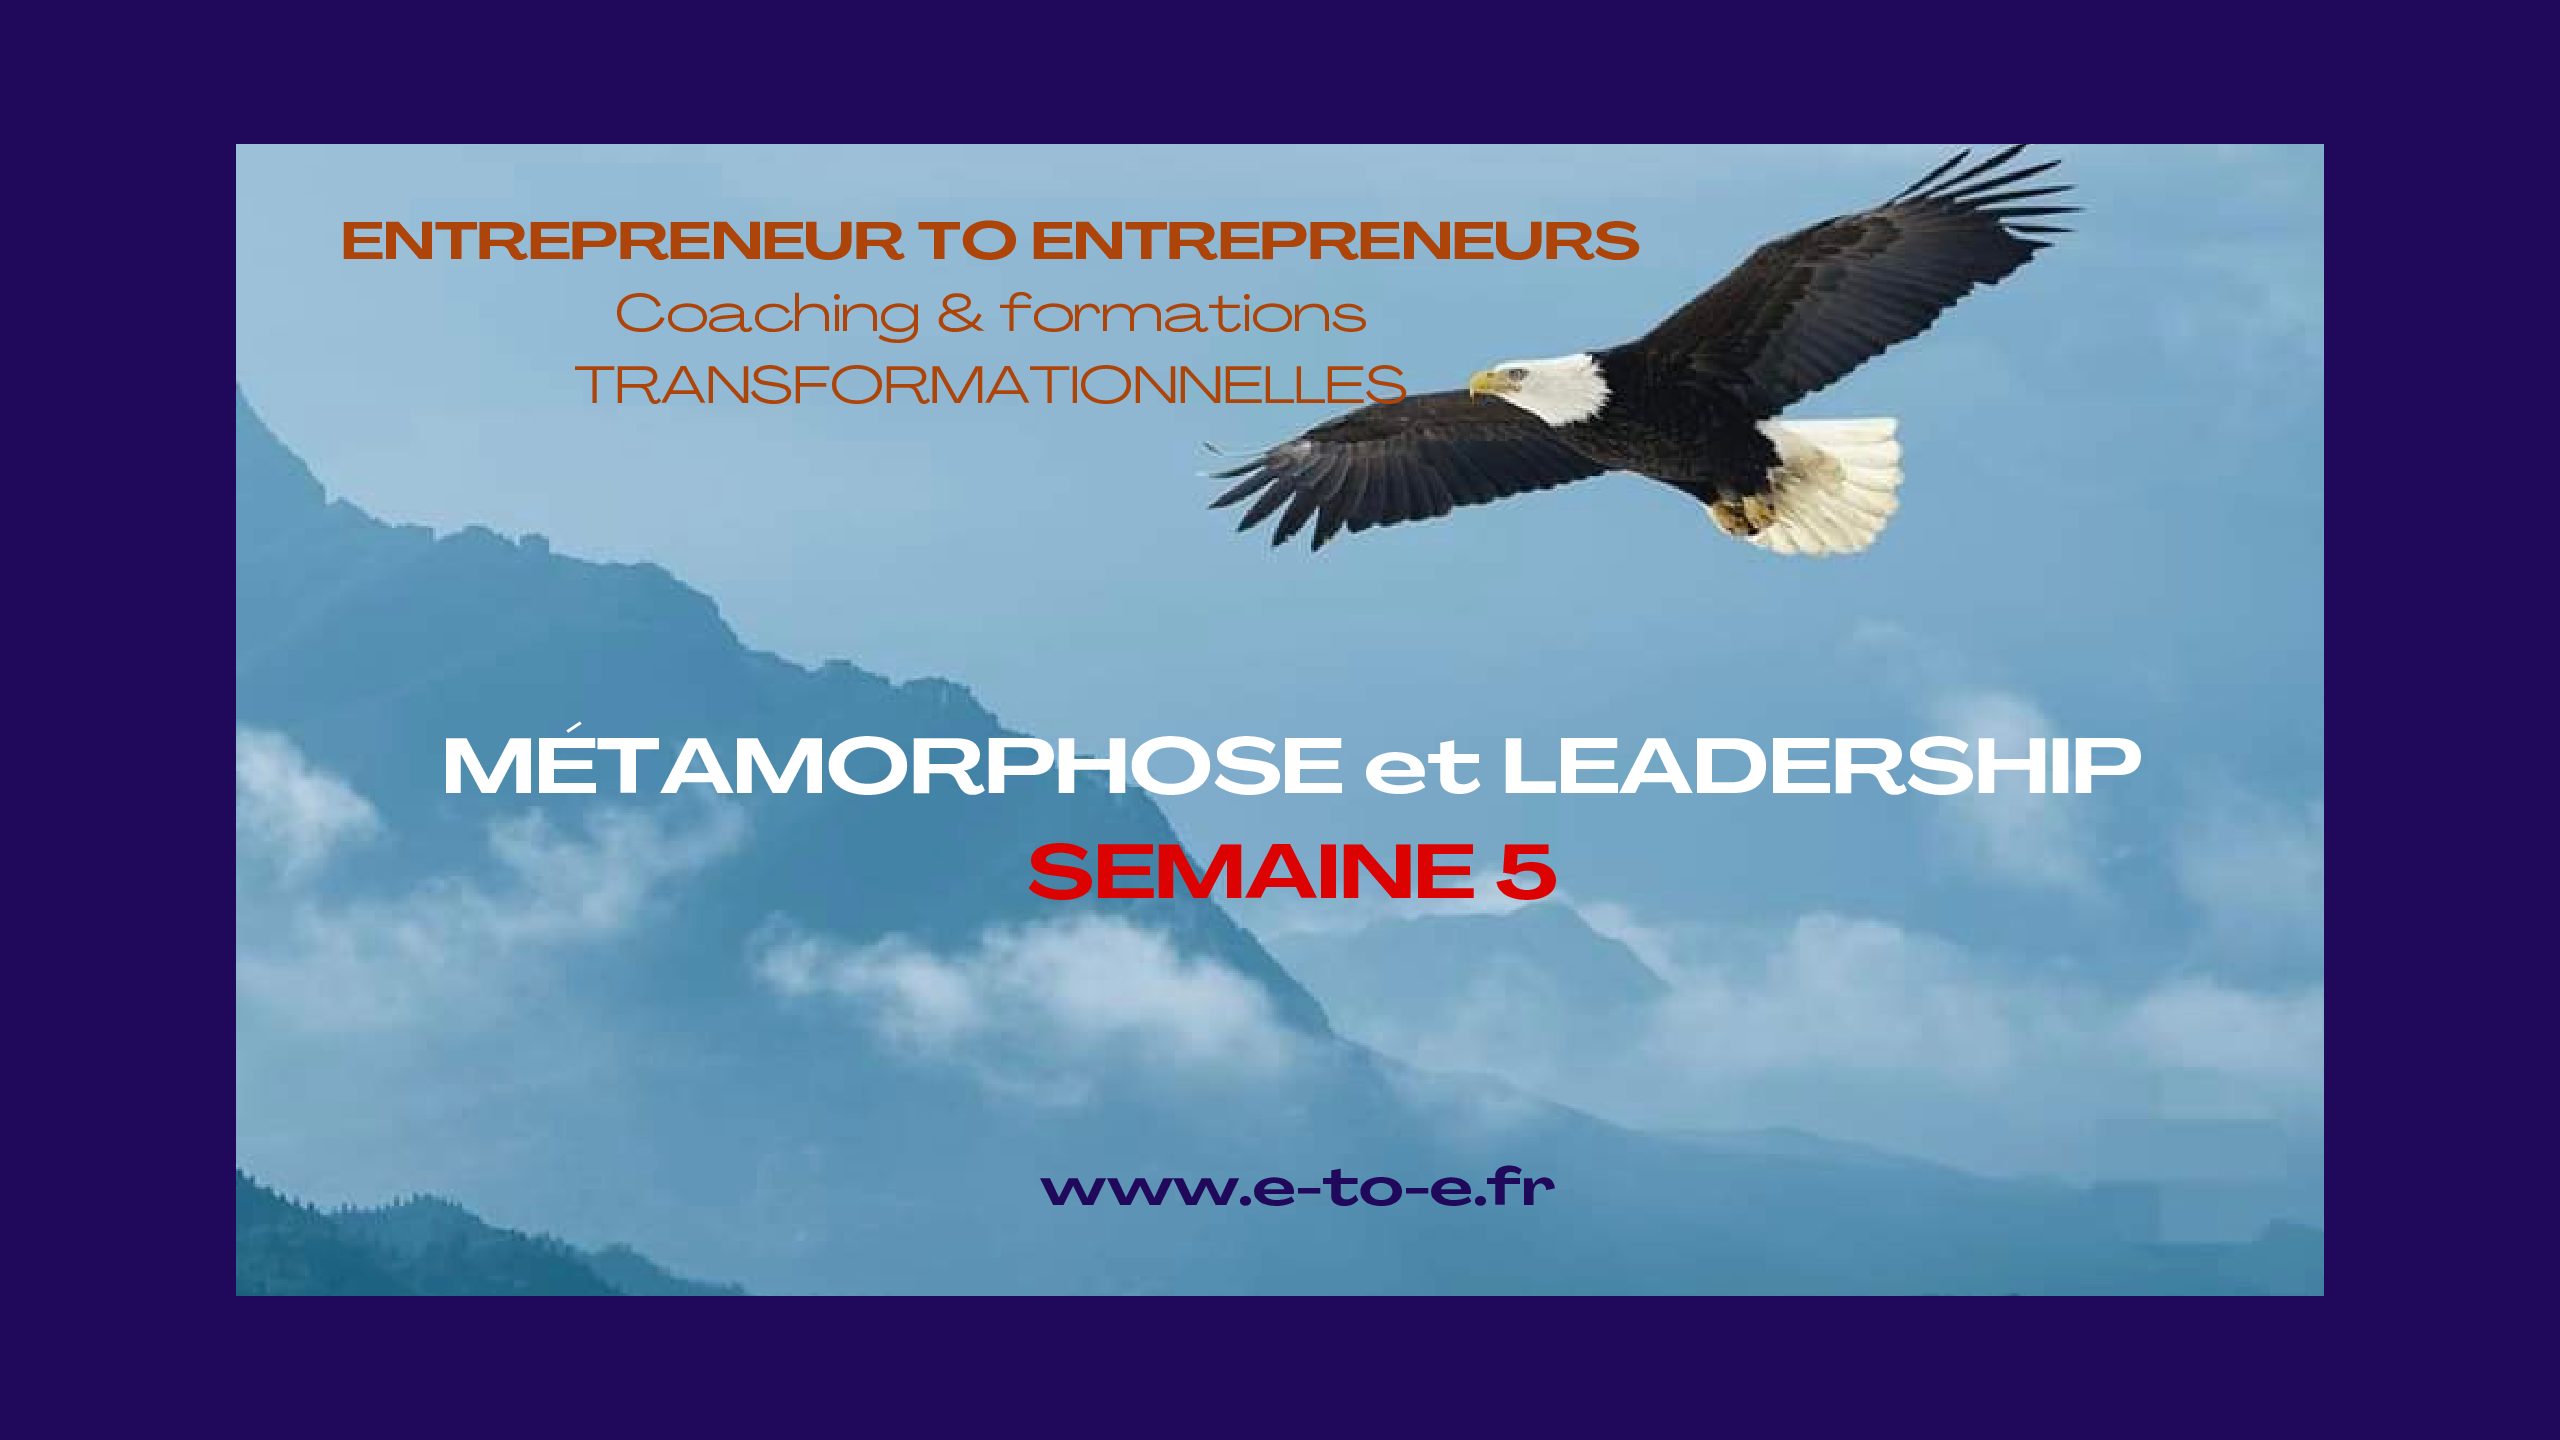 MÉTAMORPHOSE & LEADERSHIP SEMAINE 5